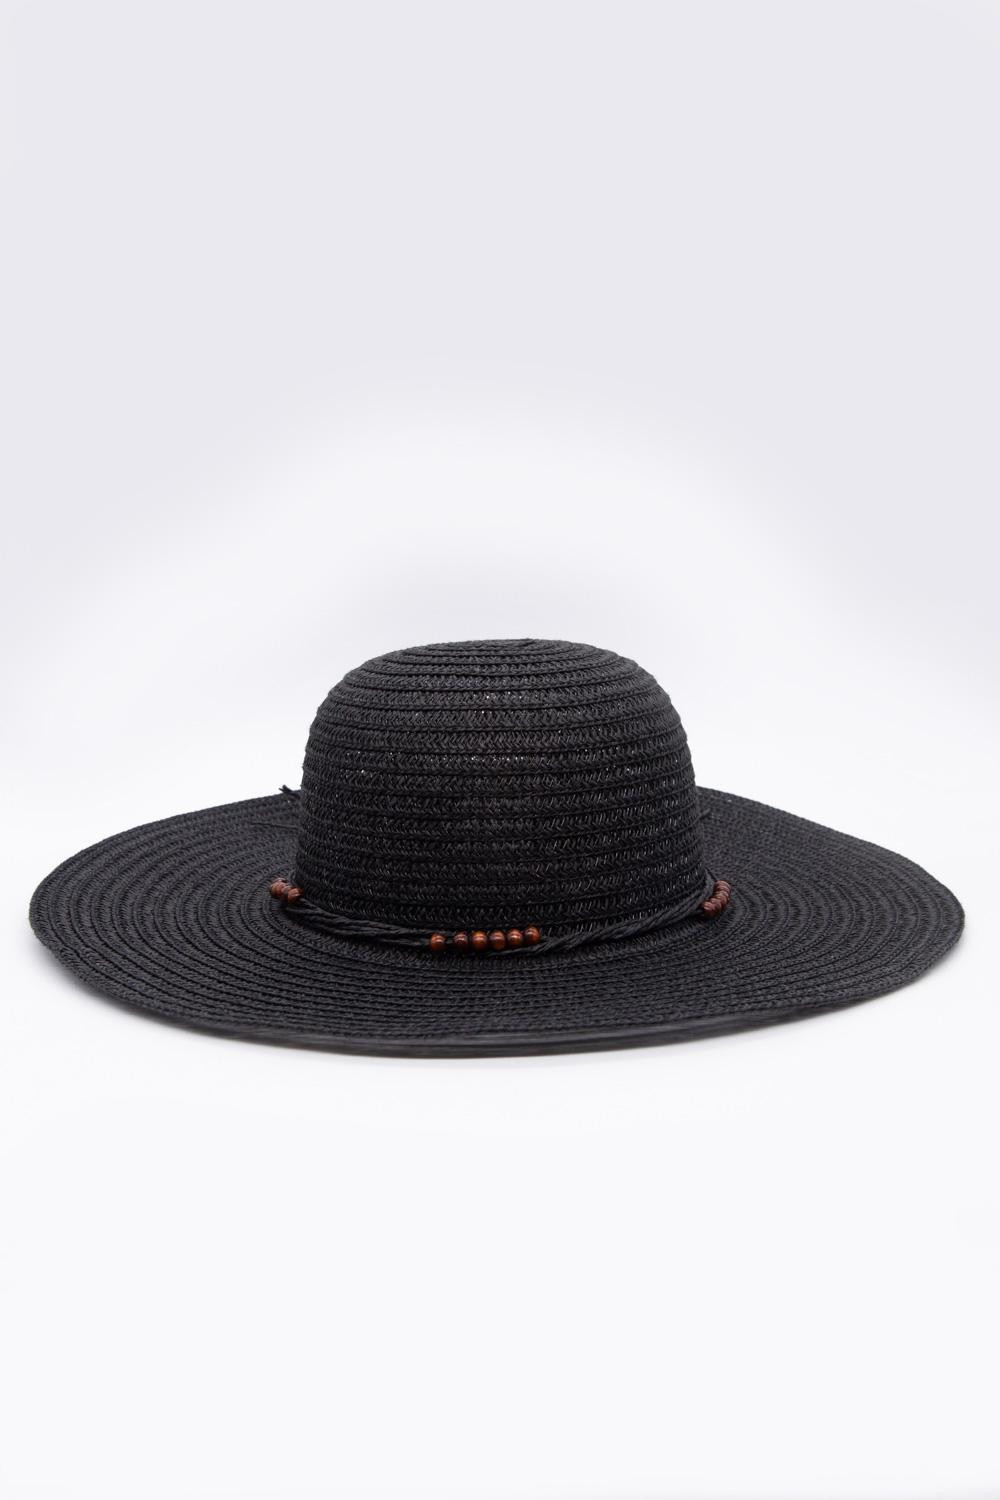 Sombrero tejido negro con ala ancha plana y cordón decorativo